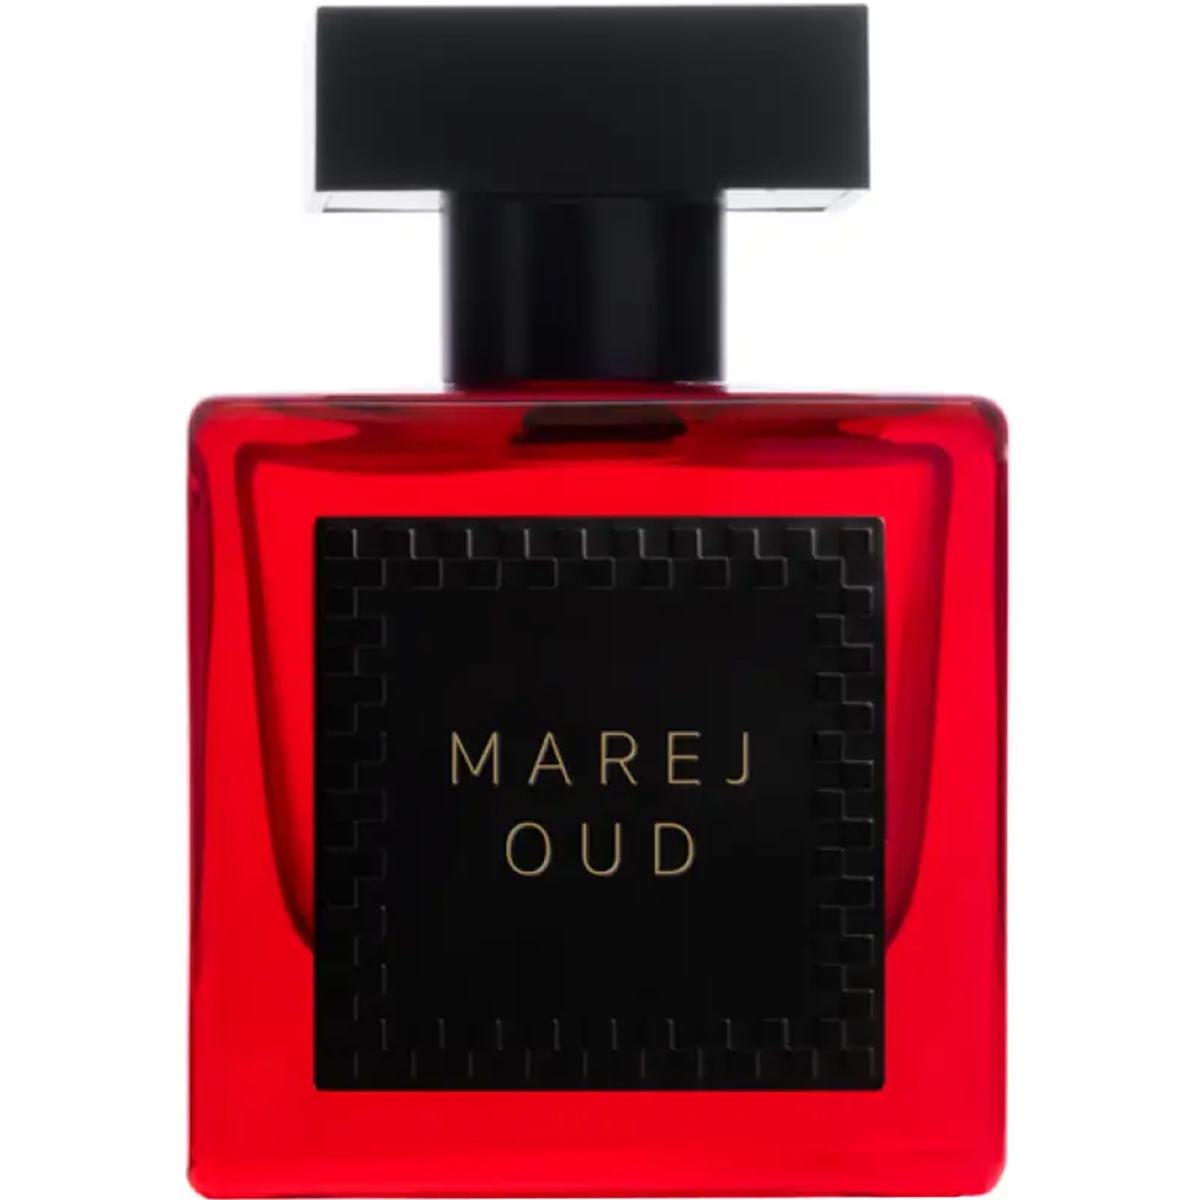 Marej Oud Junaid Perfumes Perfumes, Unisex Perfumes, Arada Perfumes